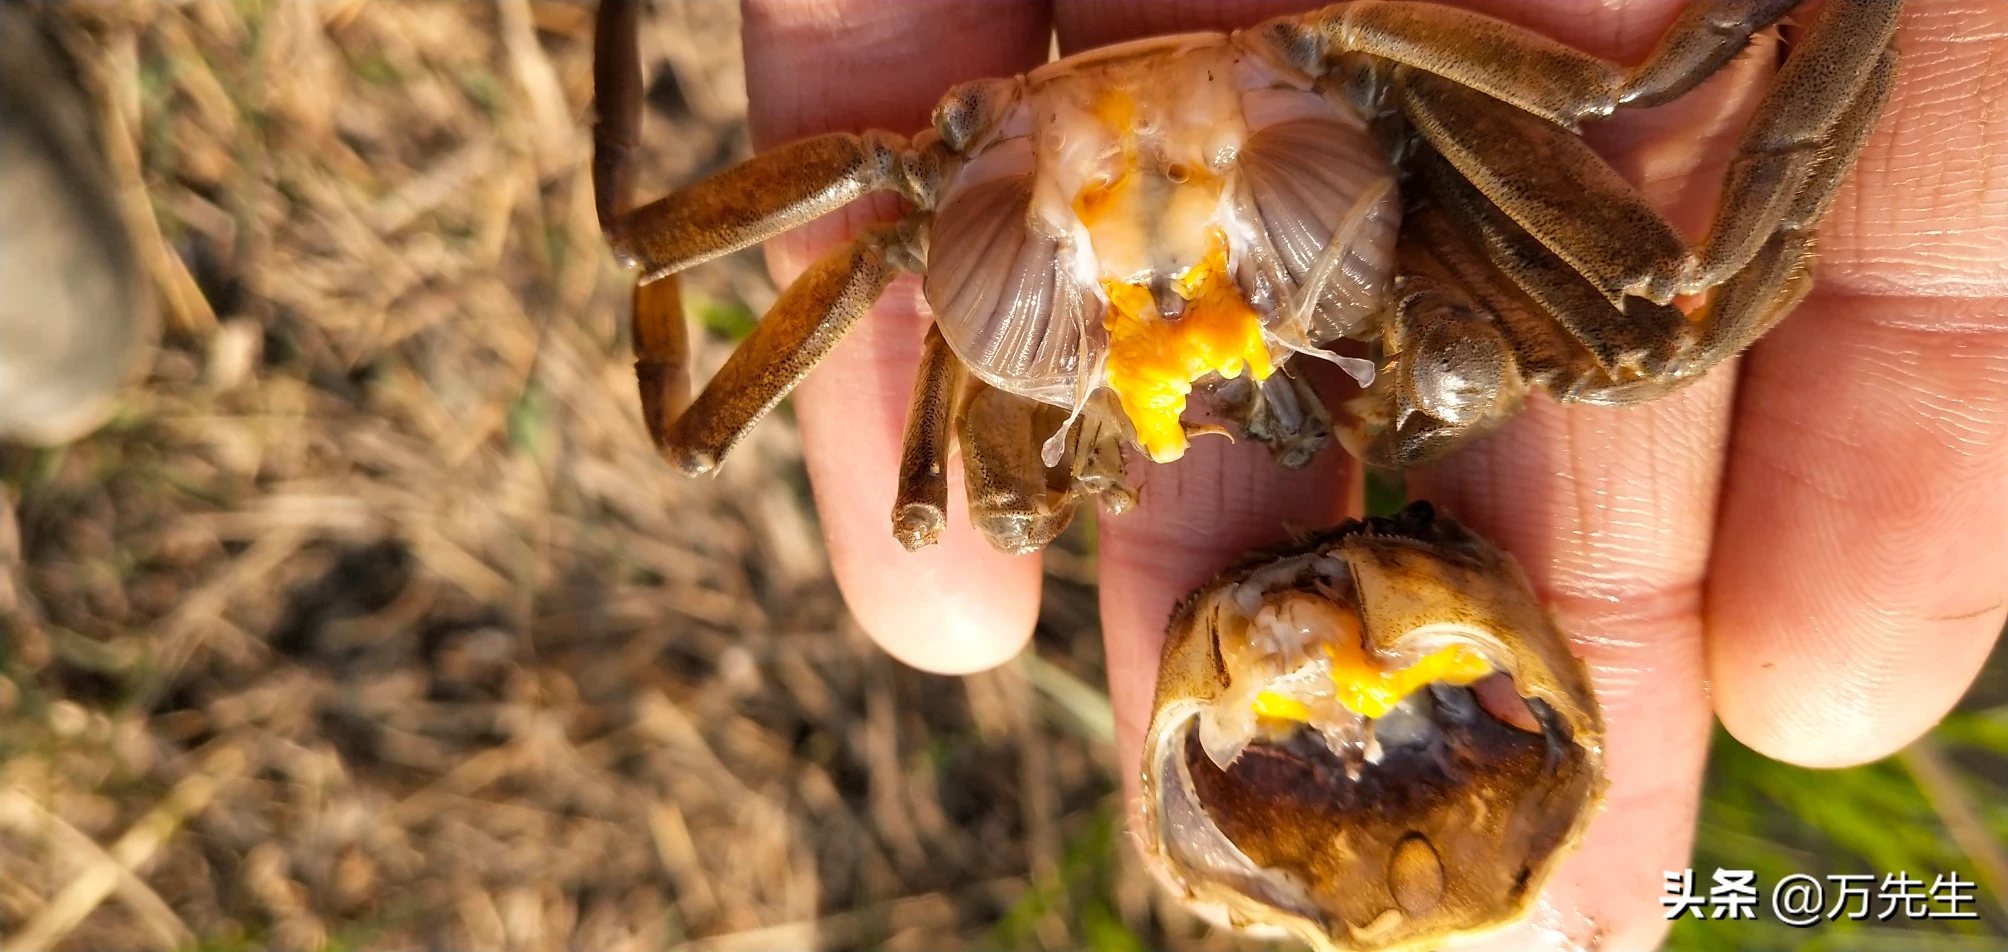 螃蟹第一次脱壳有的死亡了是什么原因？ - 秦岭老农的回答 - 头条问答